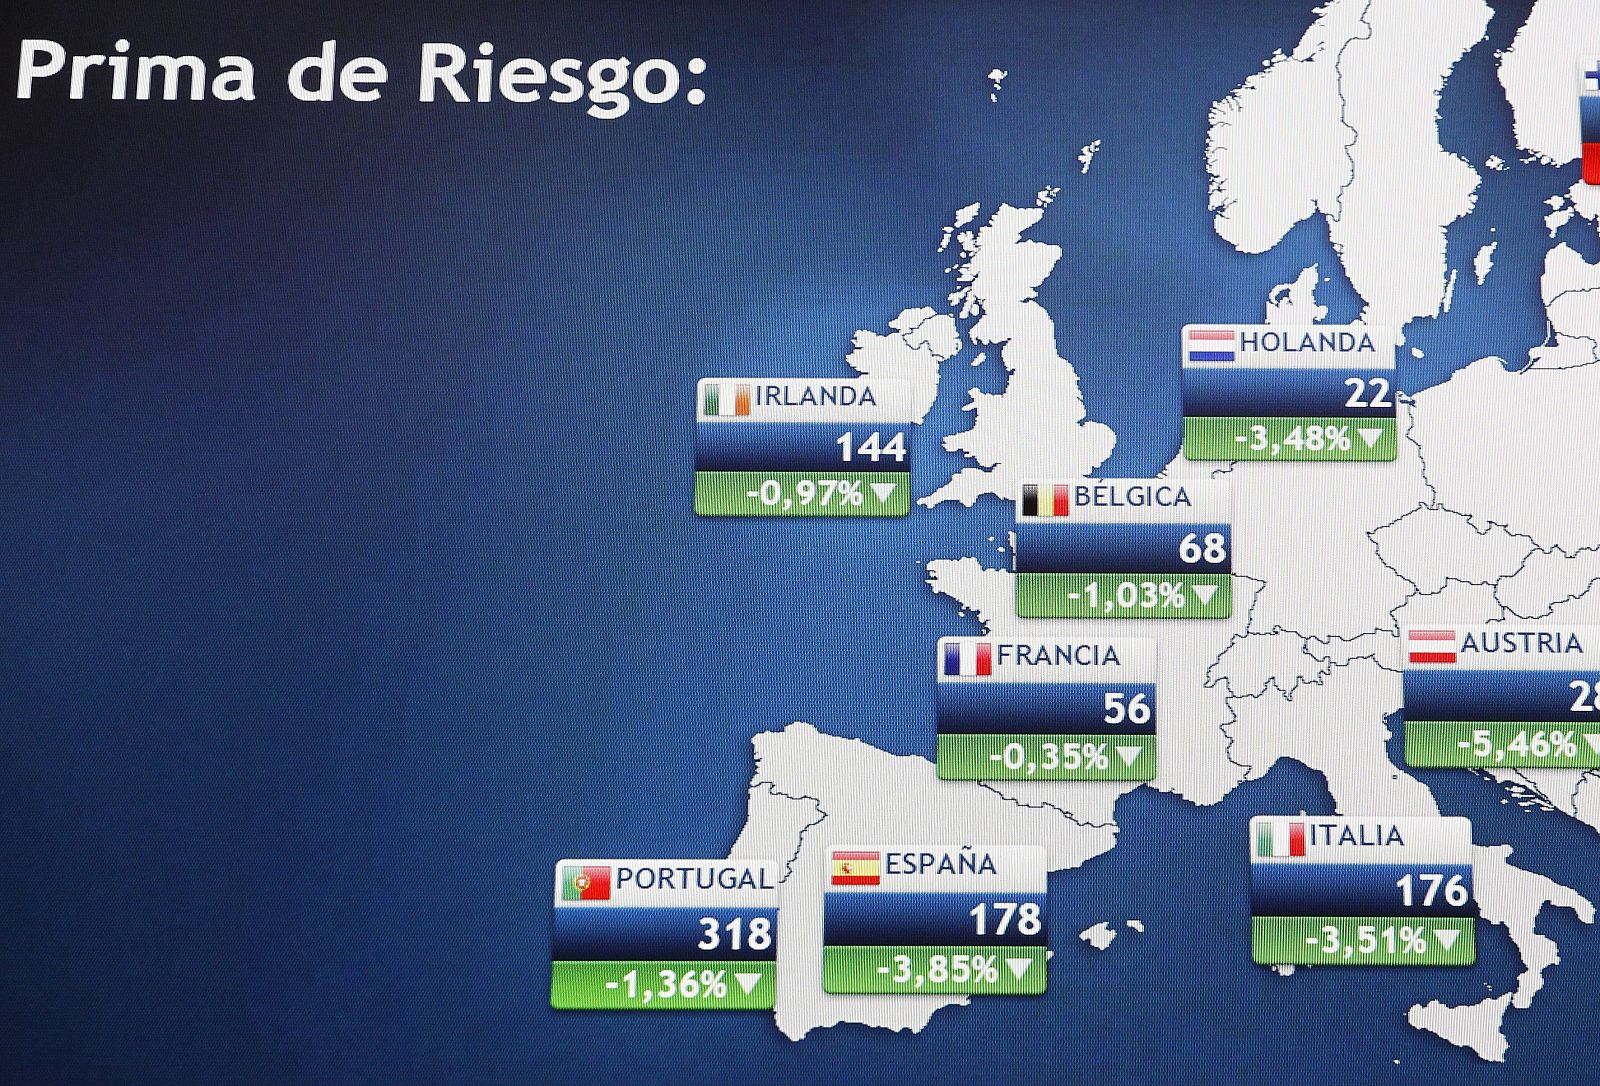 Monitor en la Bolsa de Madrid que muestra, entre otras, la prima de riesgo de España